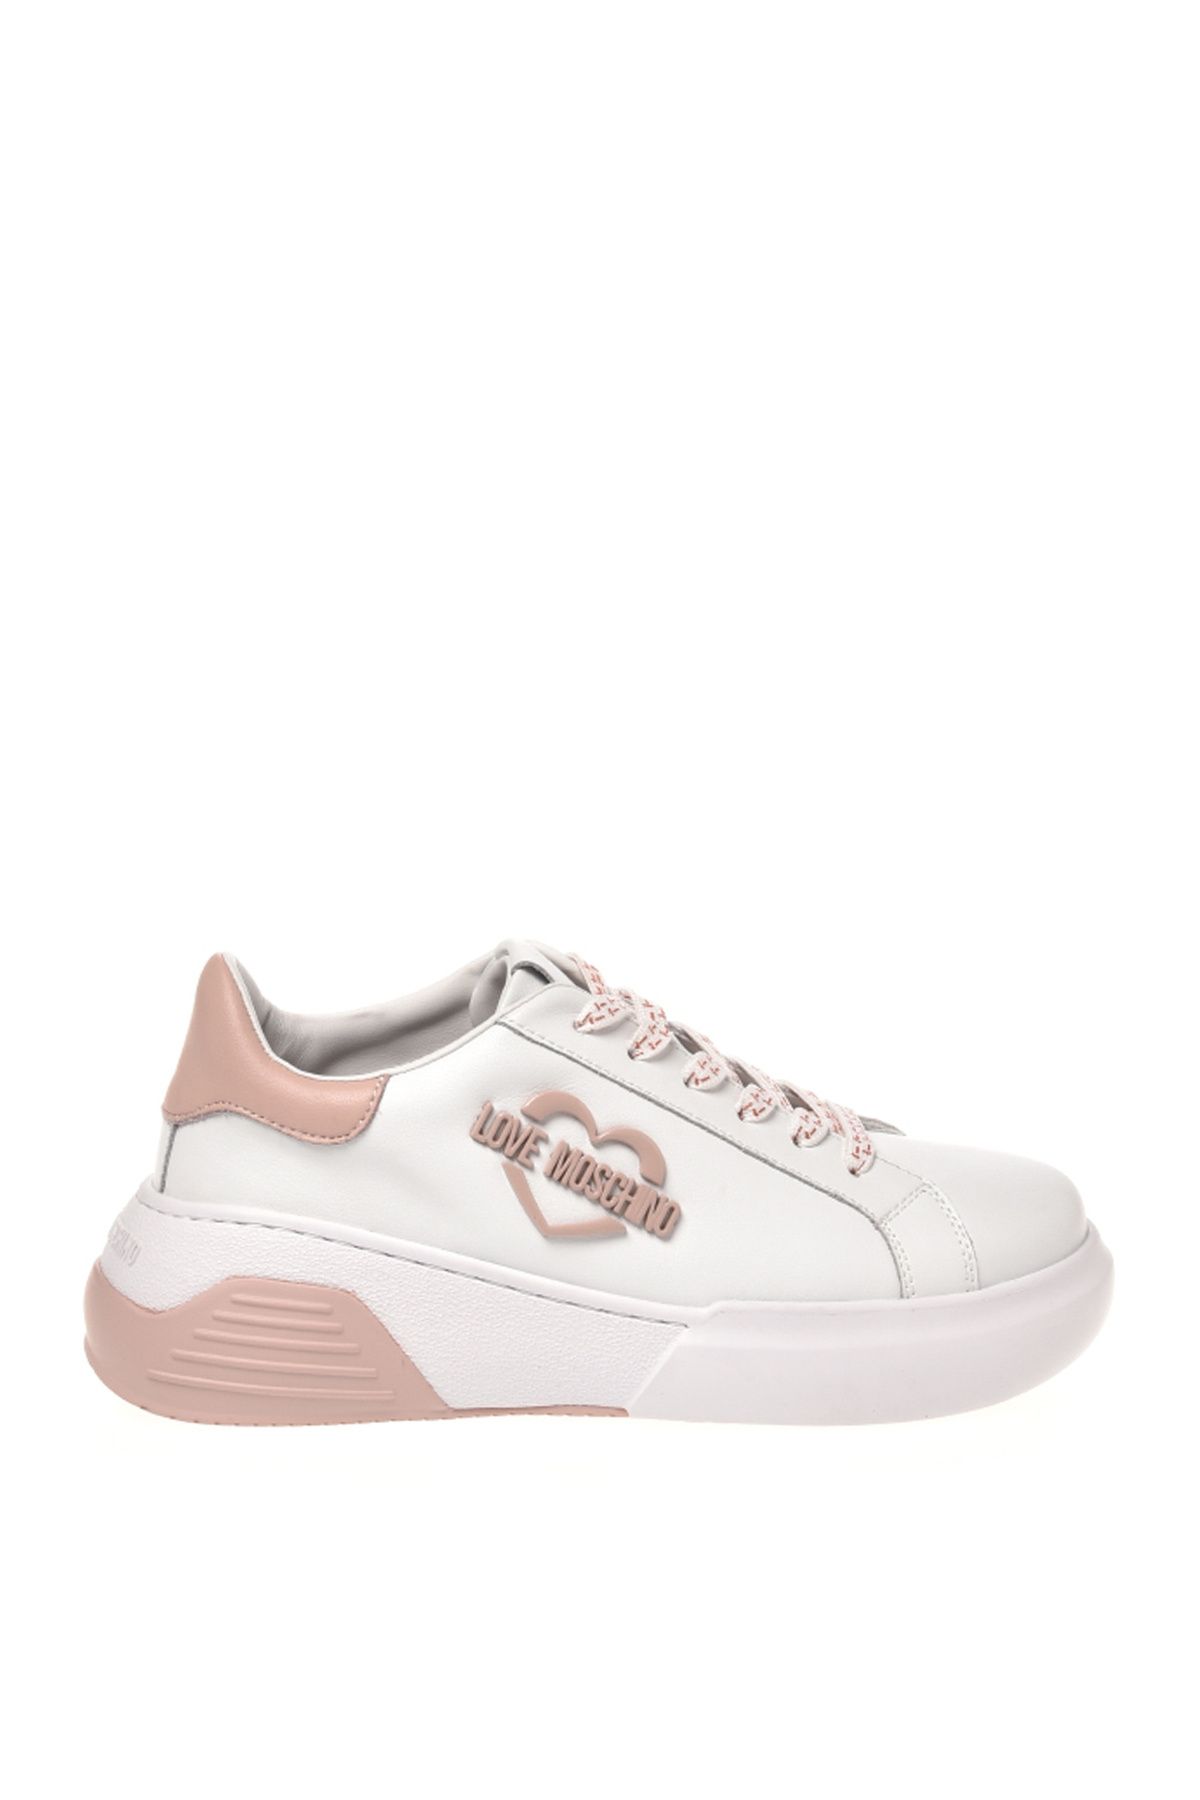 Moschino Beyaz - Pembe Kadın Deri Sneaker